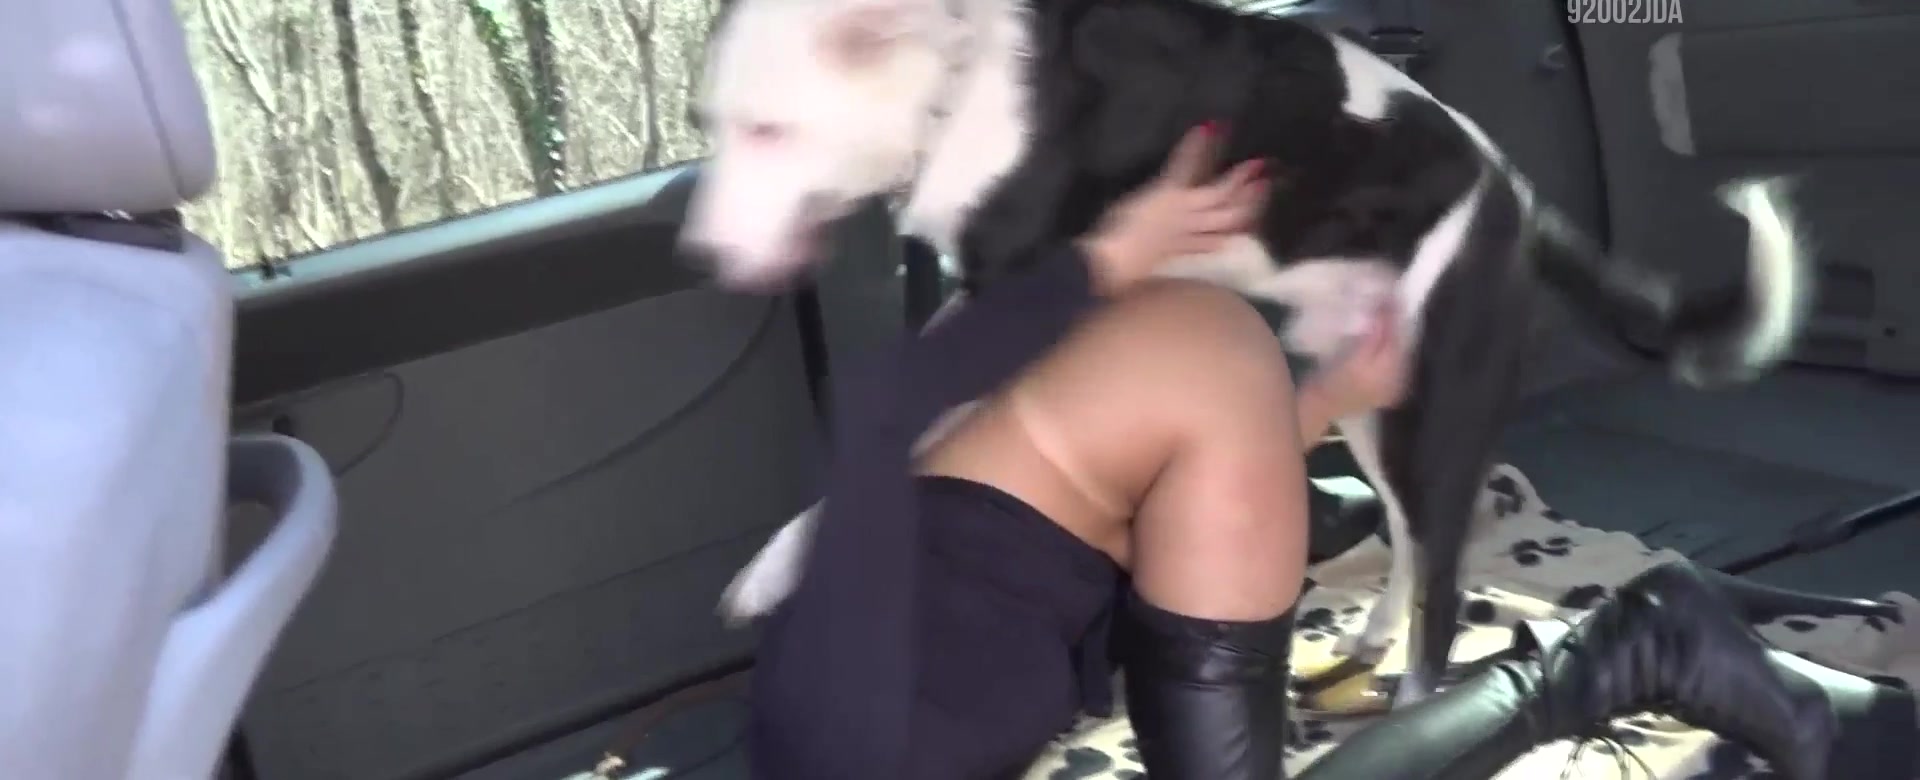 Filme de pornô mulher transando com cachorro